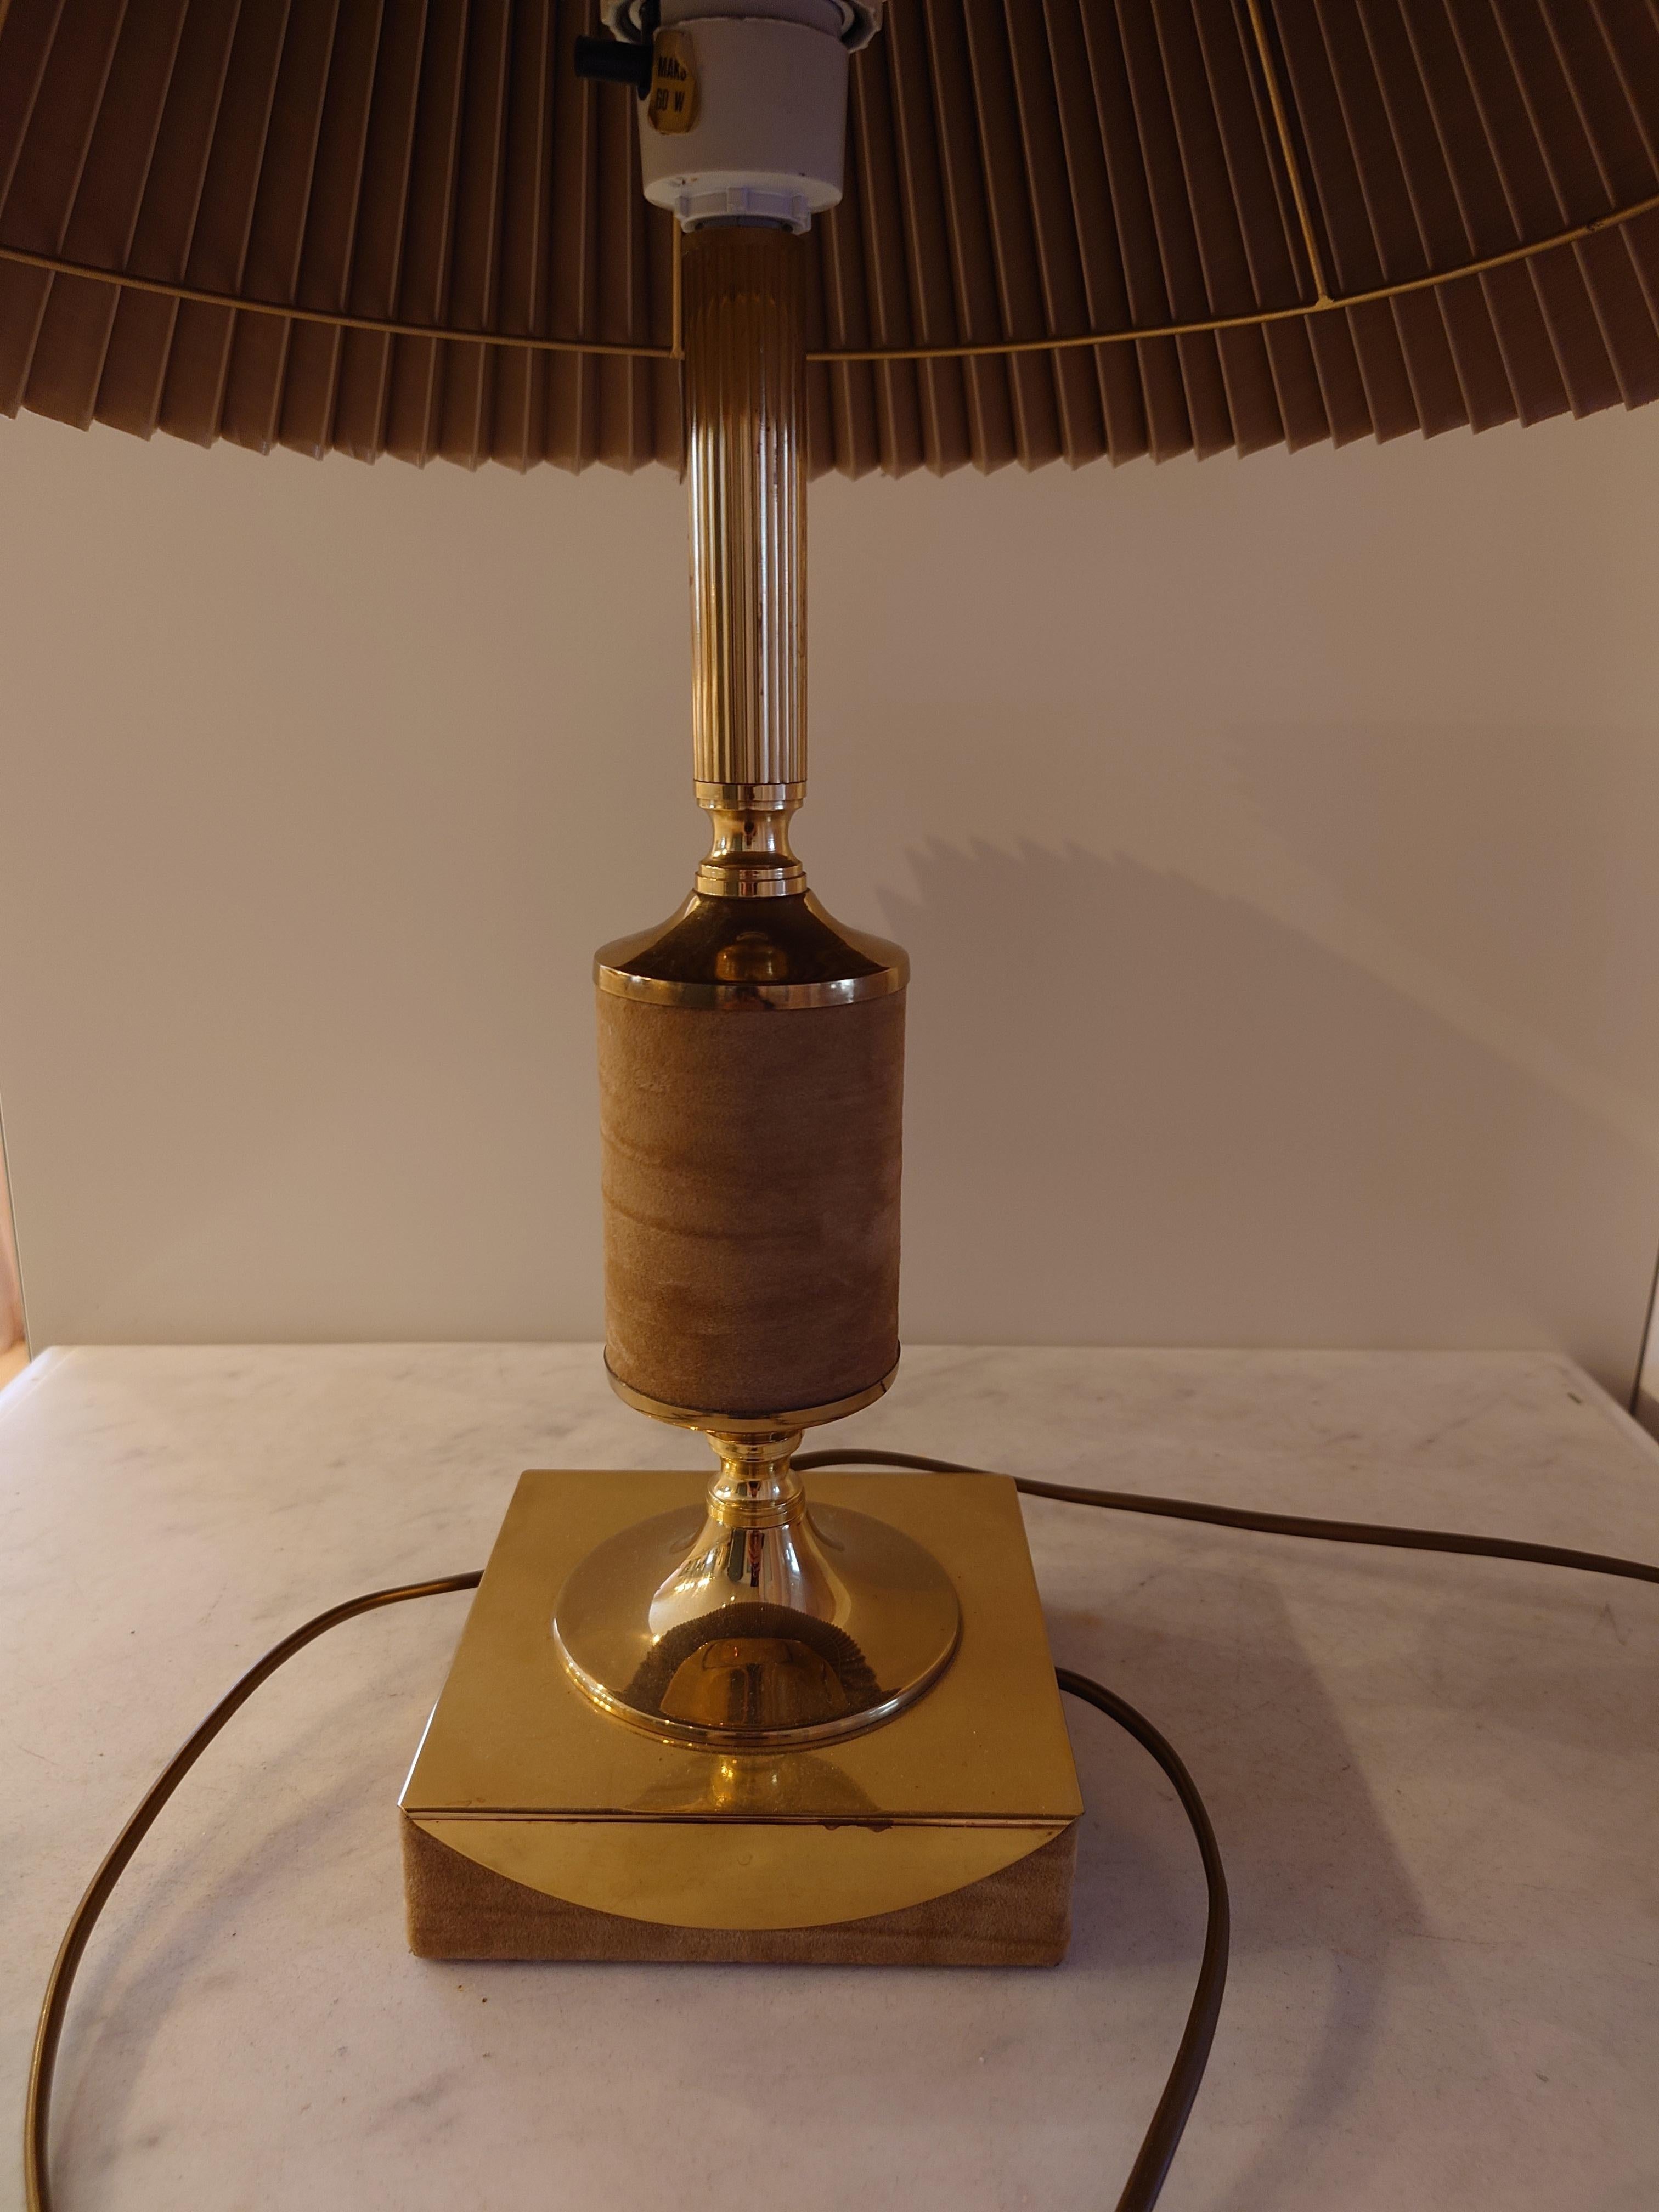 
Tr & Company est un fabricant norvégien de lampes connu pour ses designs exquis. Ils ont créé une lampe de table élégante en laiton massif, ce qui lui confère une sensation de luxe et de robustesse. La lampe est dotée d'un magnifique abat-jour